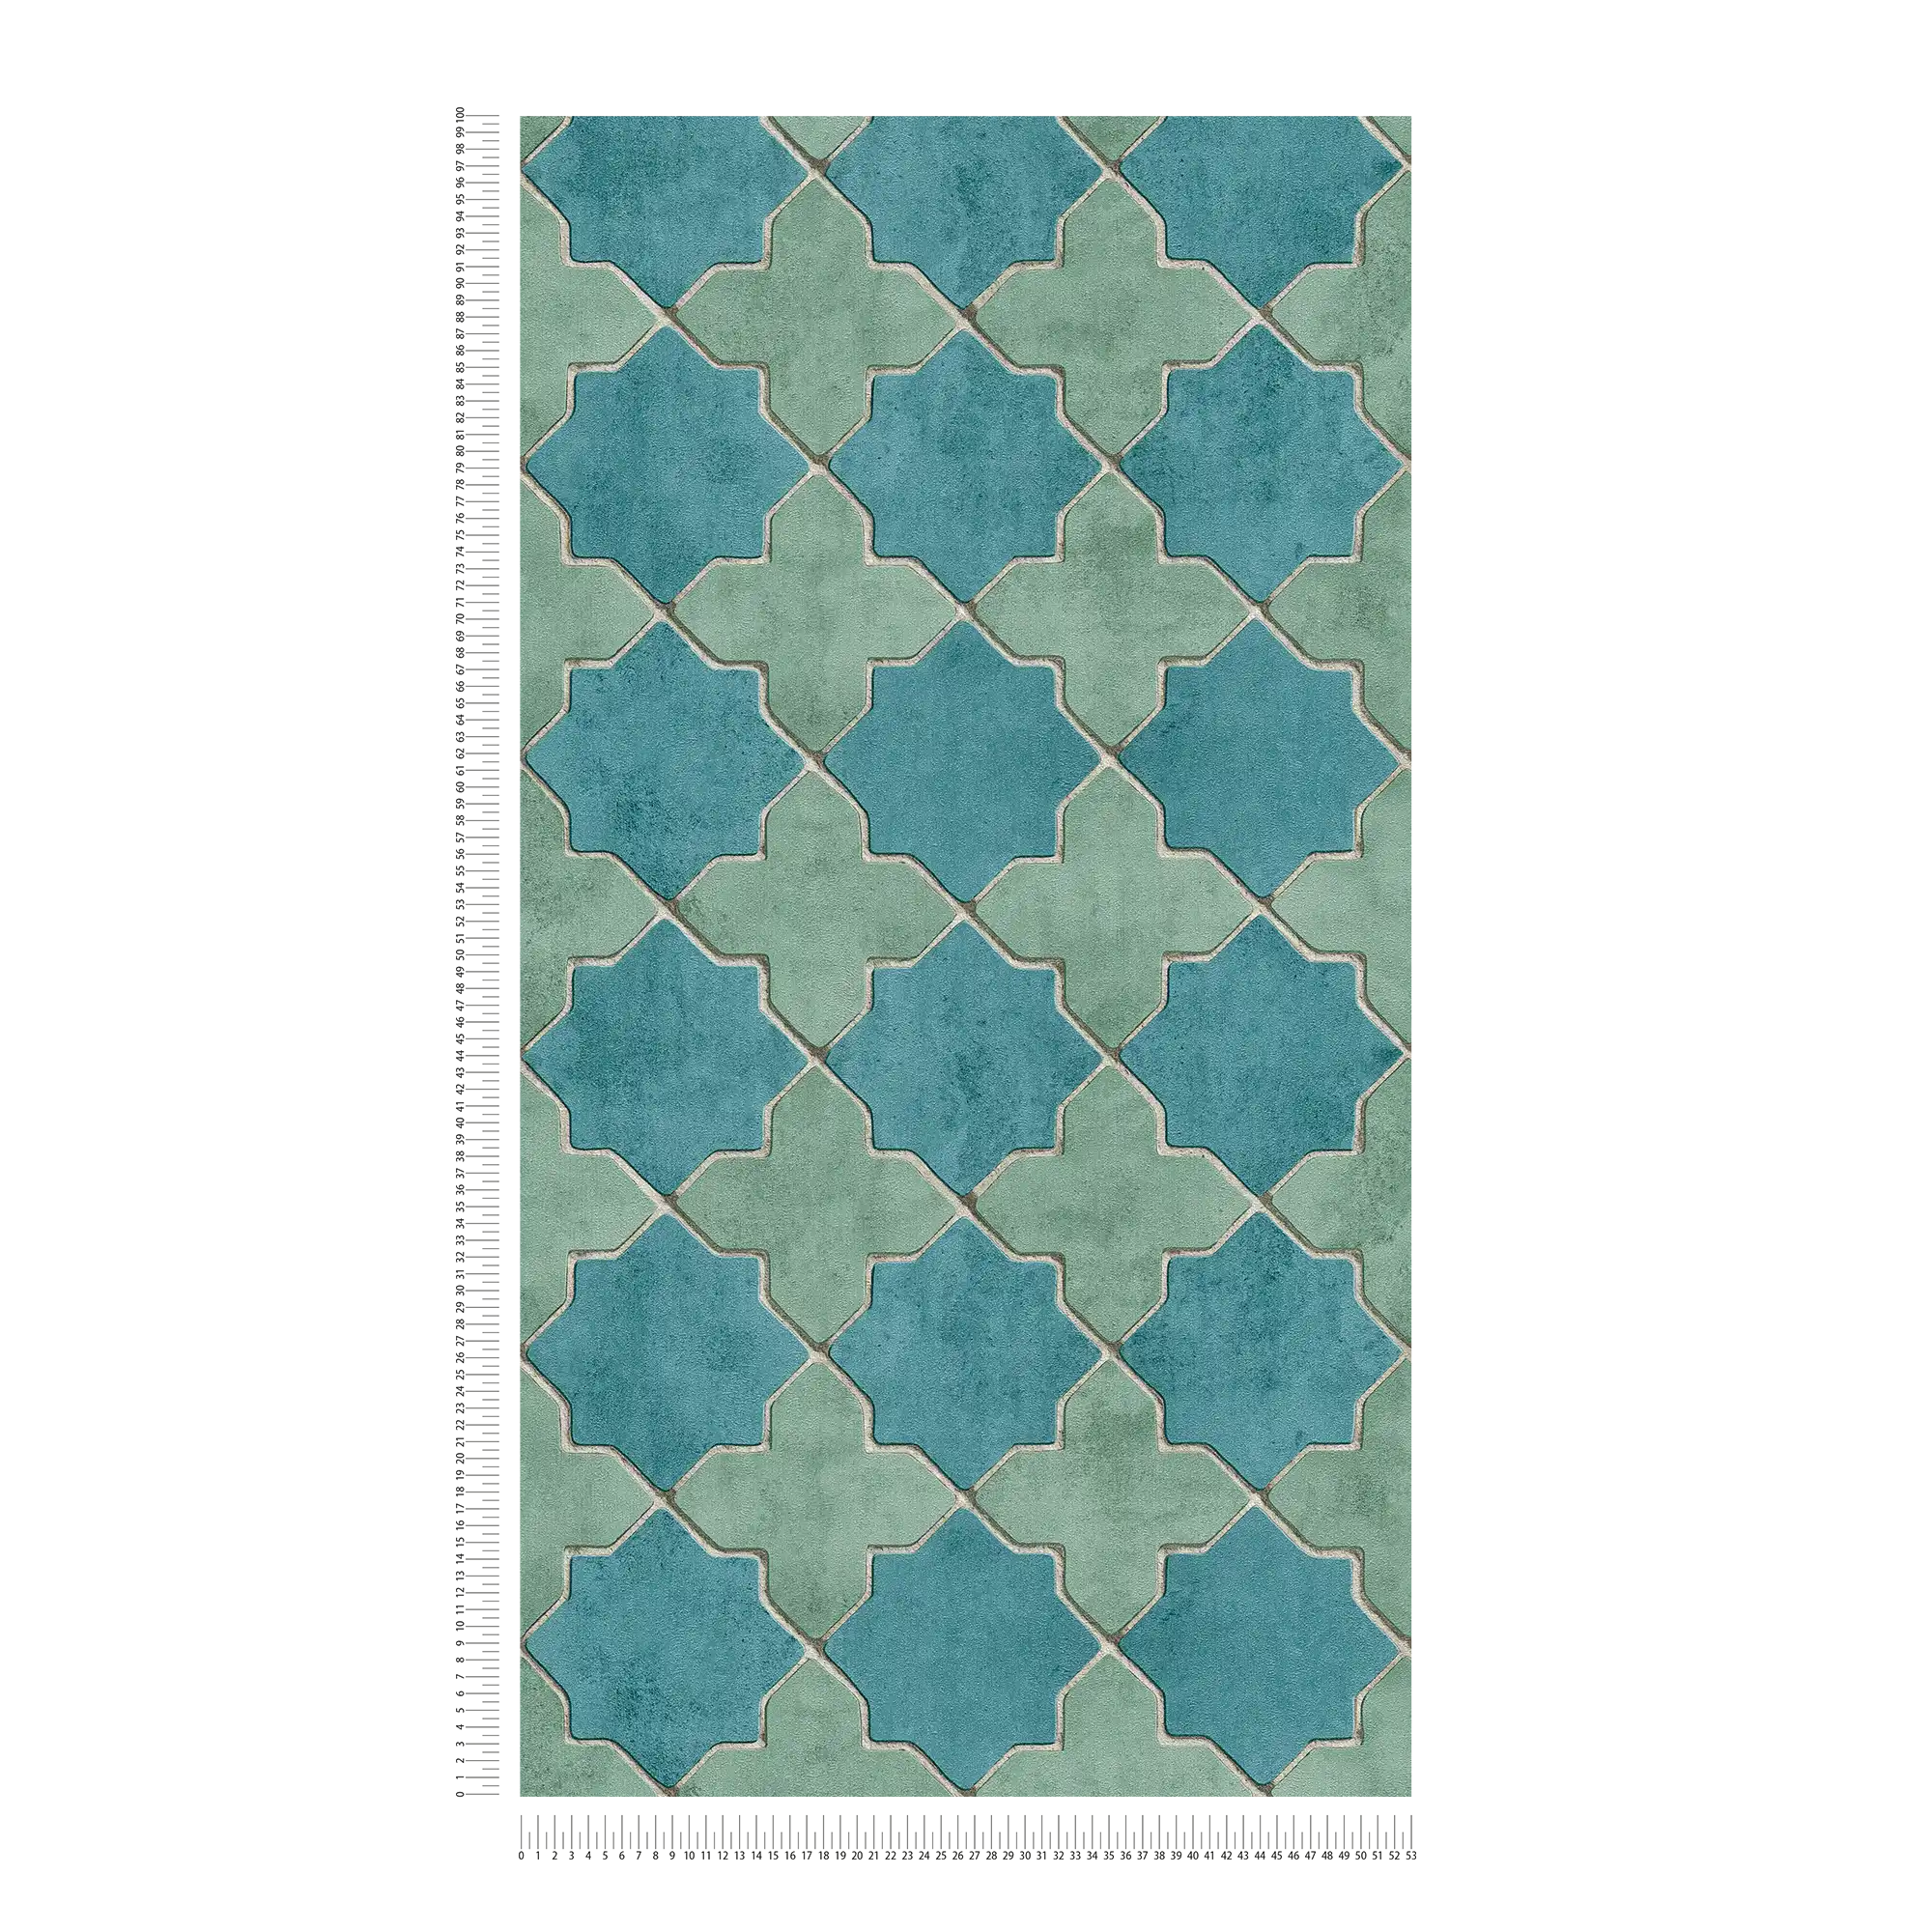             Fliesen-Tapete Mosaik-Optik – Blau, Grün, Beige
        